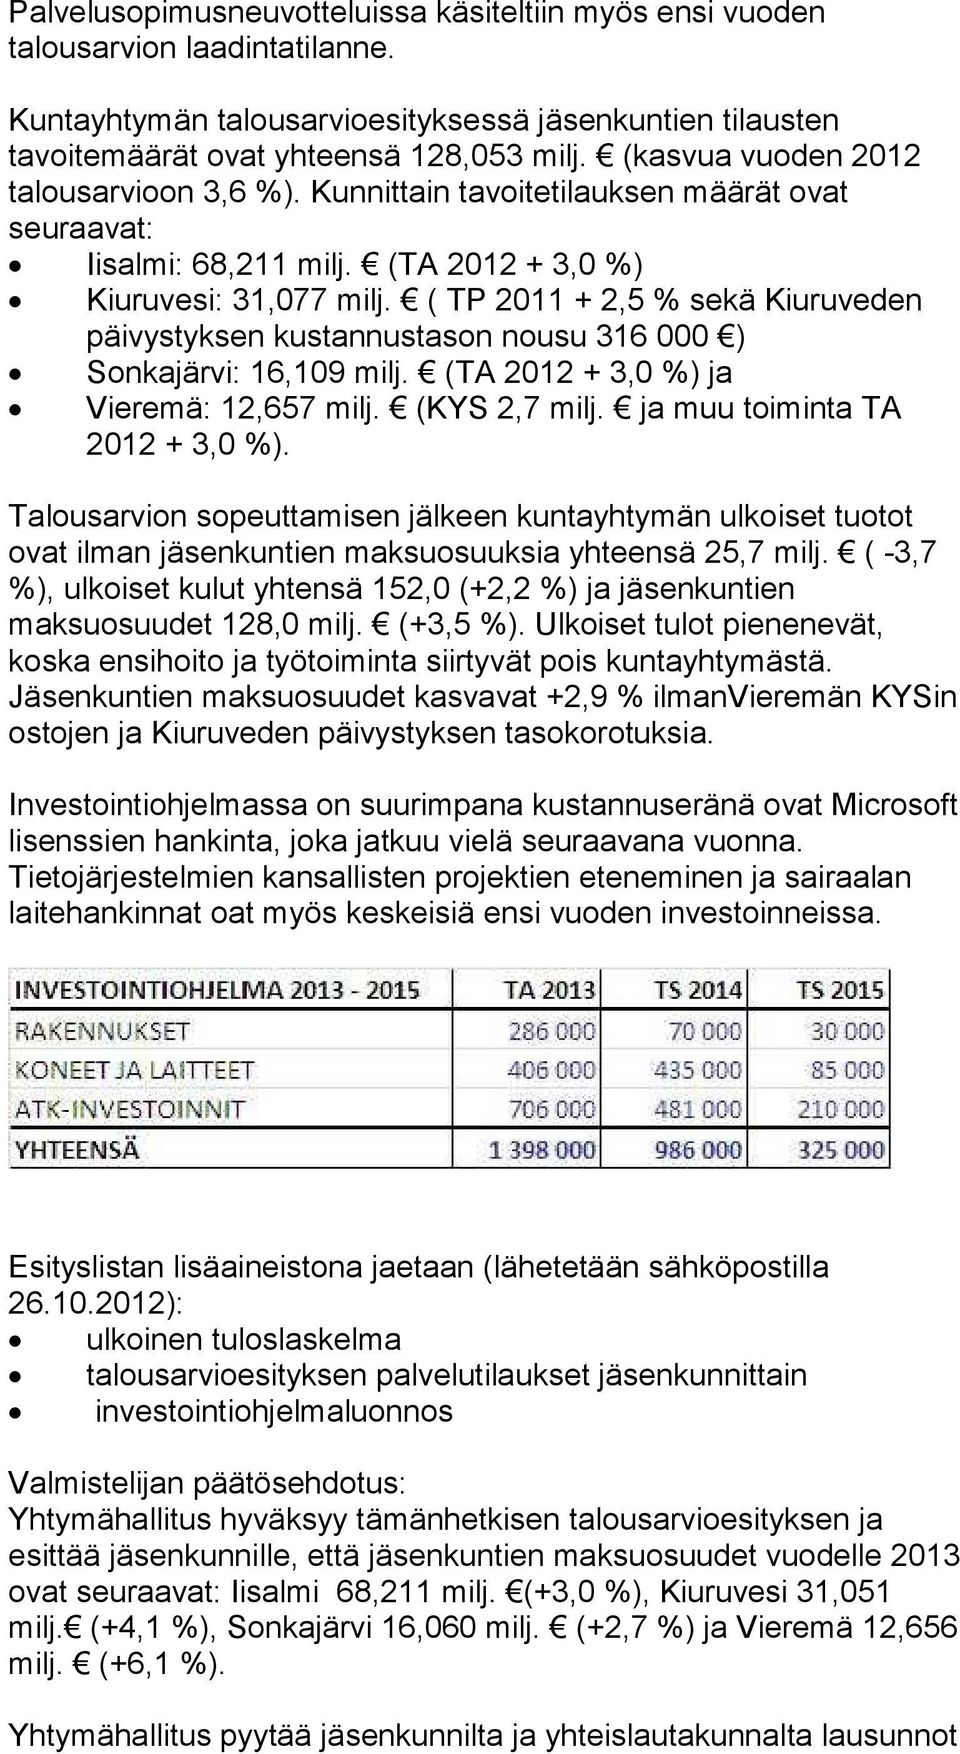 ( TP 2011 + 2,5 % sekä Kiuruveden päivystyksen kustannustason nousu 316 000 ) Sonkajärvi: 16,109 milj. (TA 2012 + 3,0 %) ja Vieremä: 12,657 milj. (KYS 2,7 milj. ja muu toiminta TA 2012 + 3,0 %).